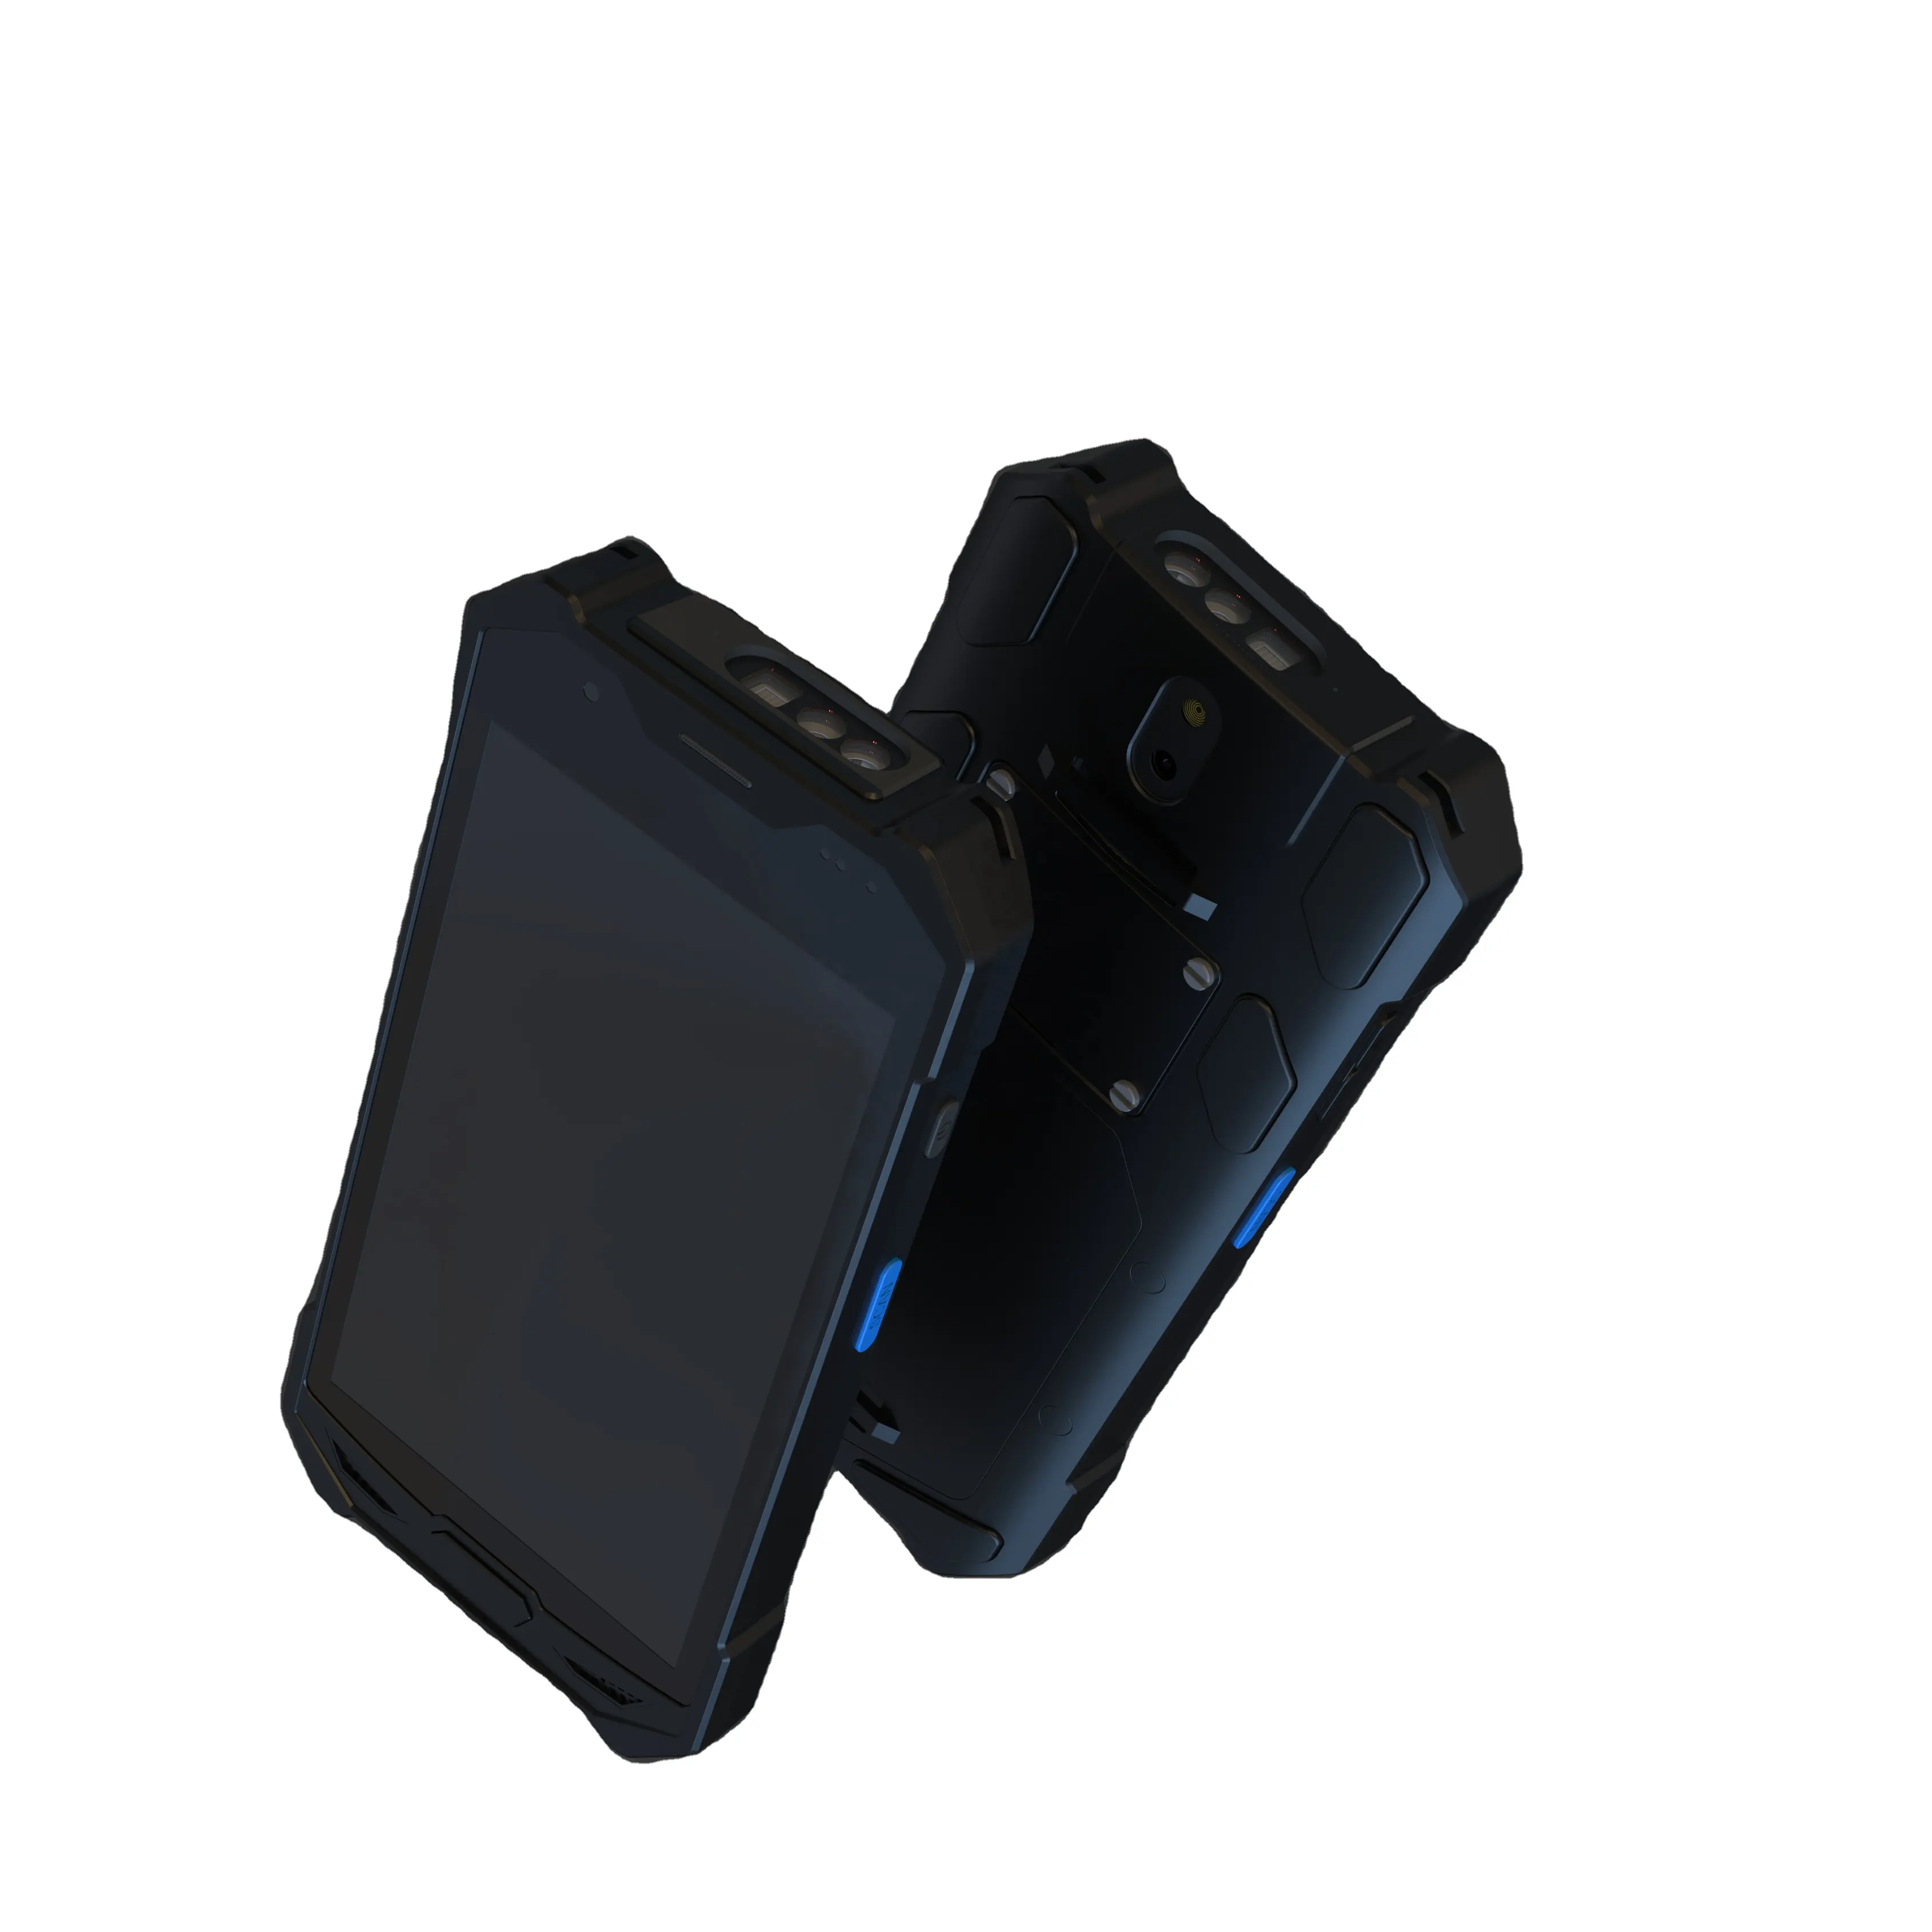 मोबाइल कंप्यूटर टर्मिनल स्मार्ट डाटा कलेक्टर हाथ में android11 बारकोड स्कैनर Octa कोर 2.0GHz 4G एनएफसी उद्योग पीडीए